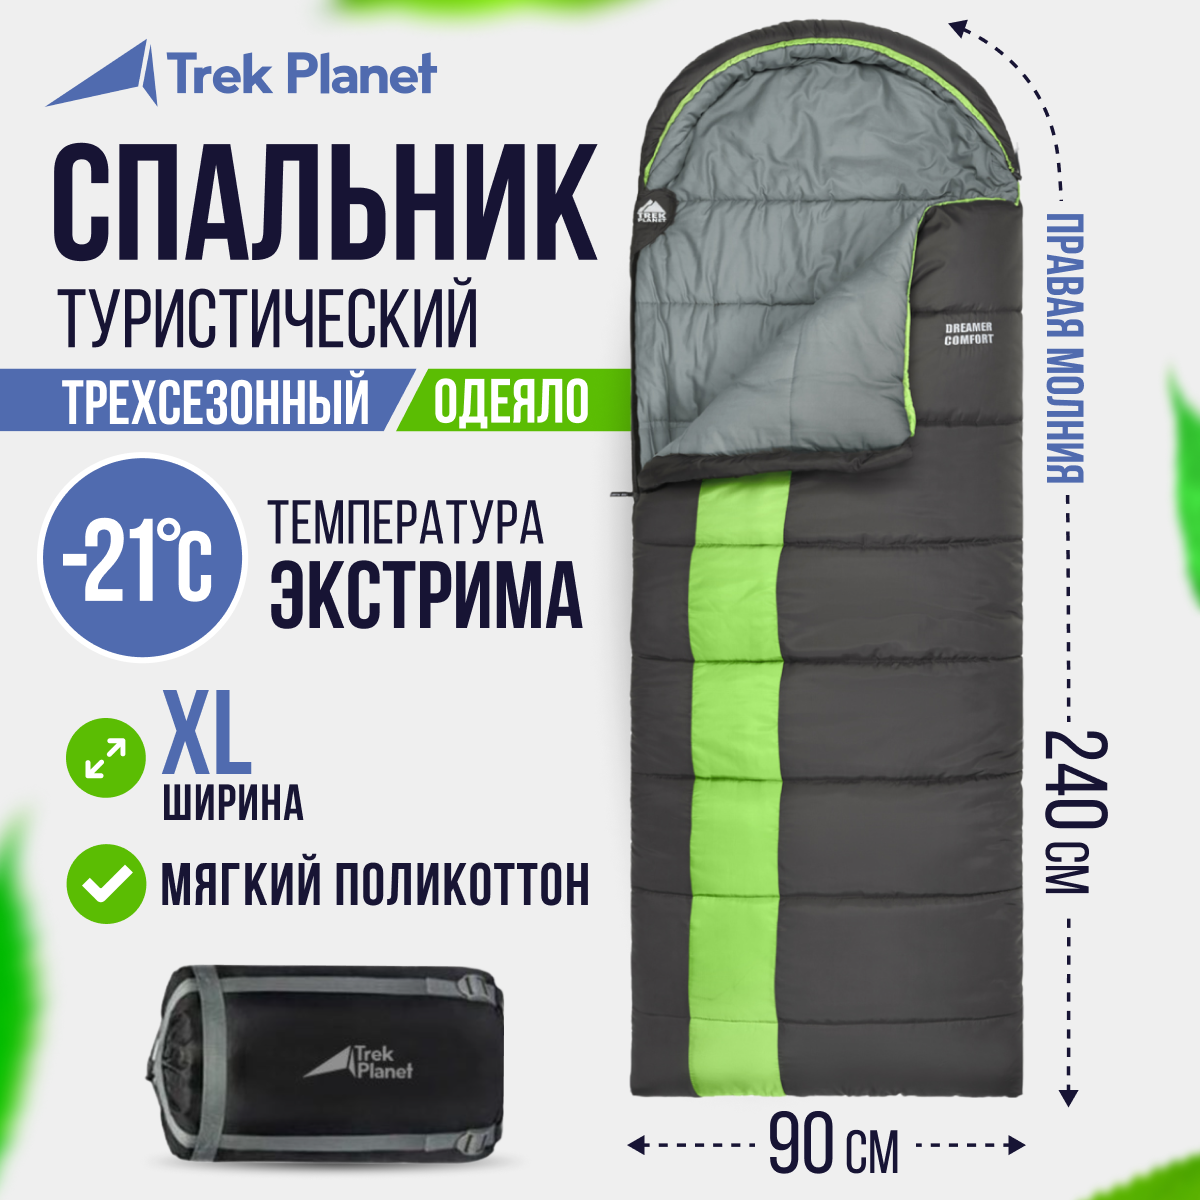 Спальный мешок Trek Planet Dreamer Comfort green/grey, правый